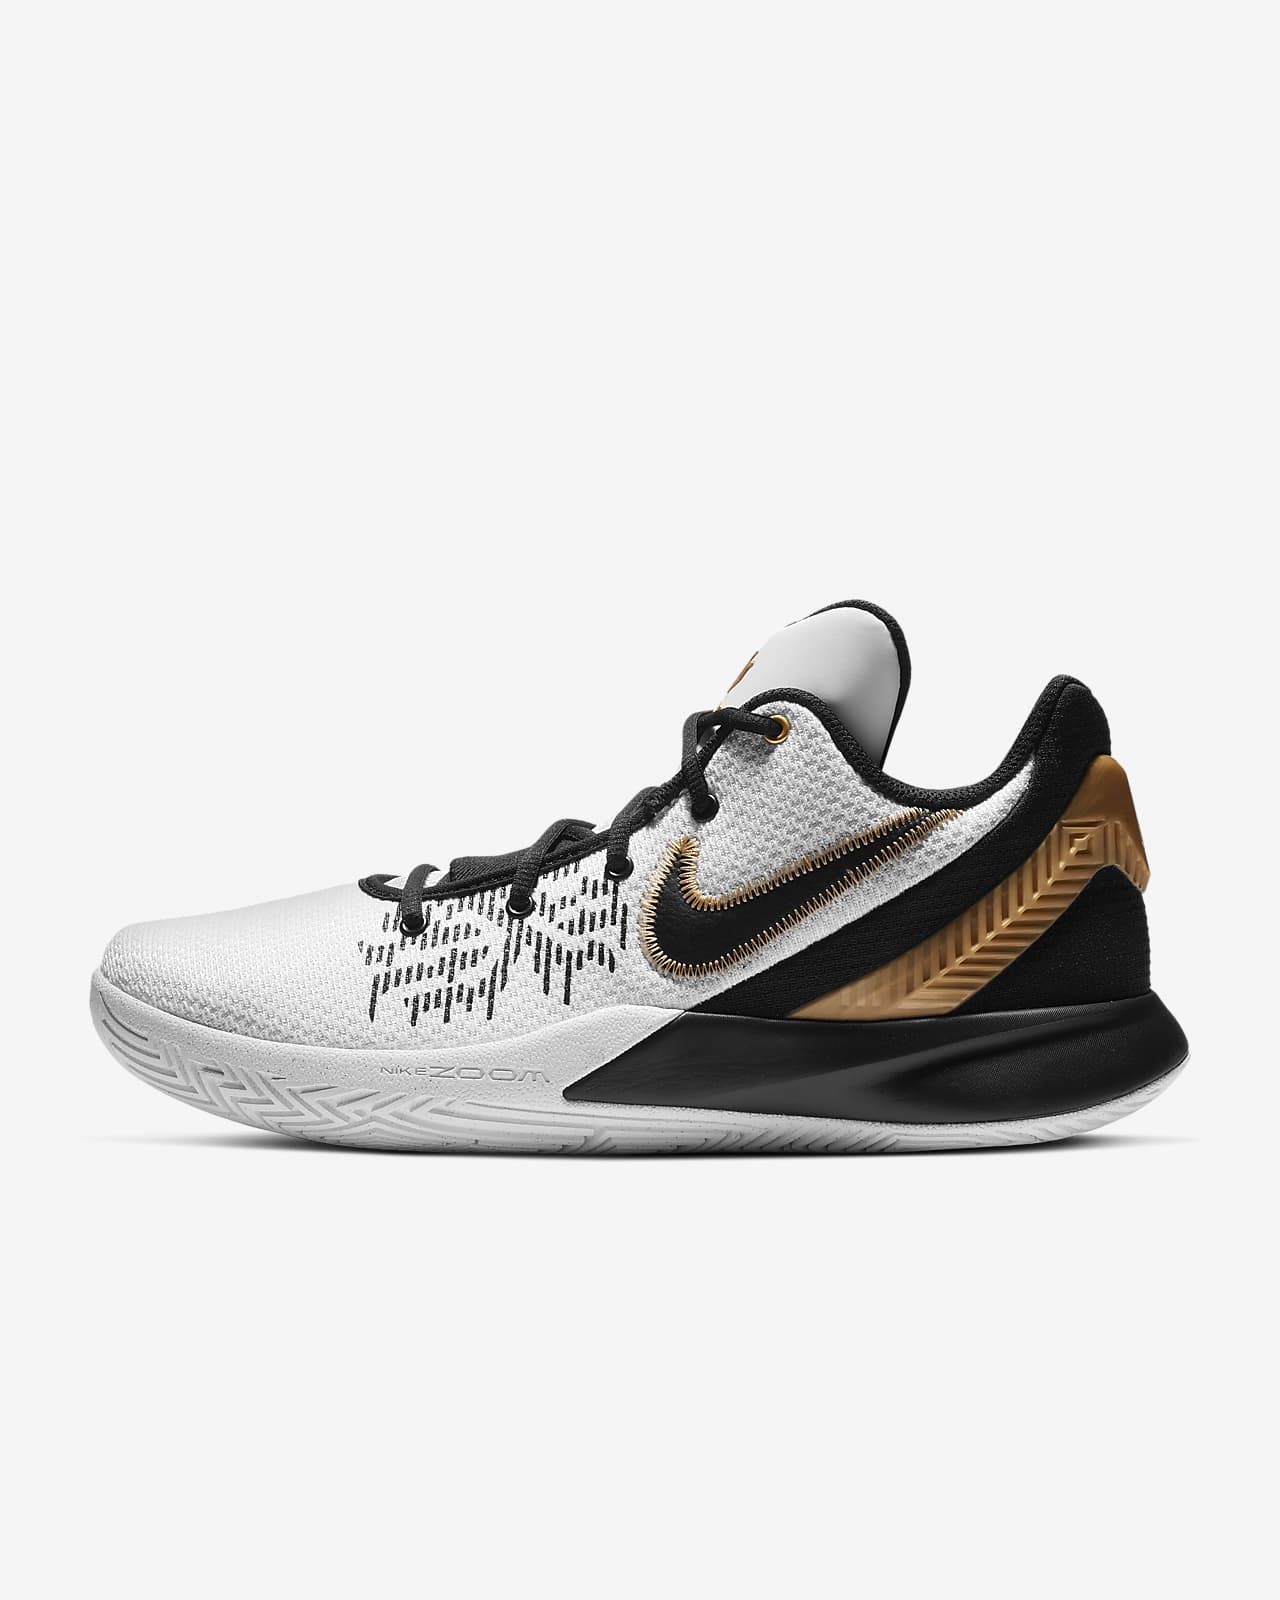 Kyrie Flytrap II Basketball Shoe. Nike IN